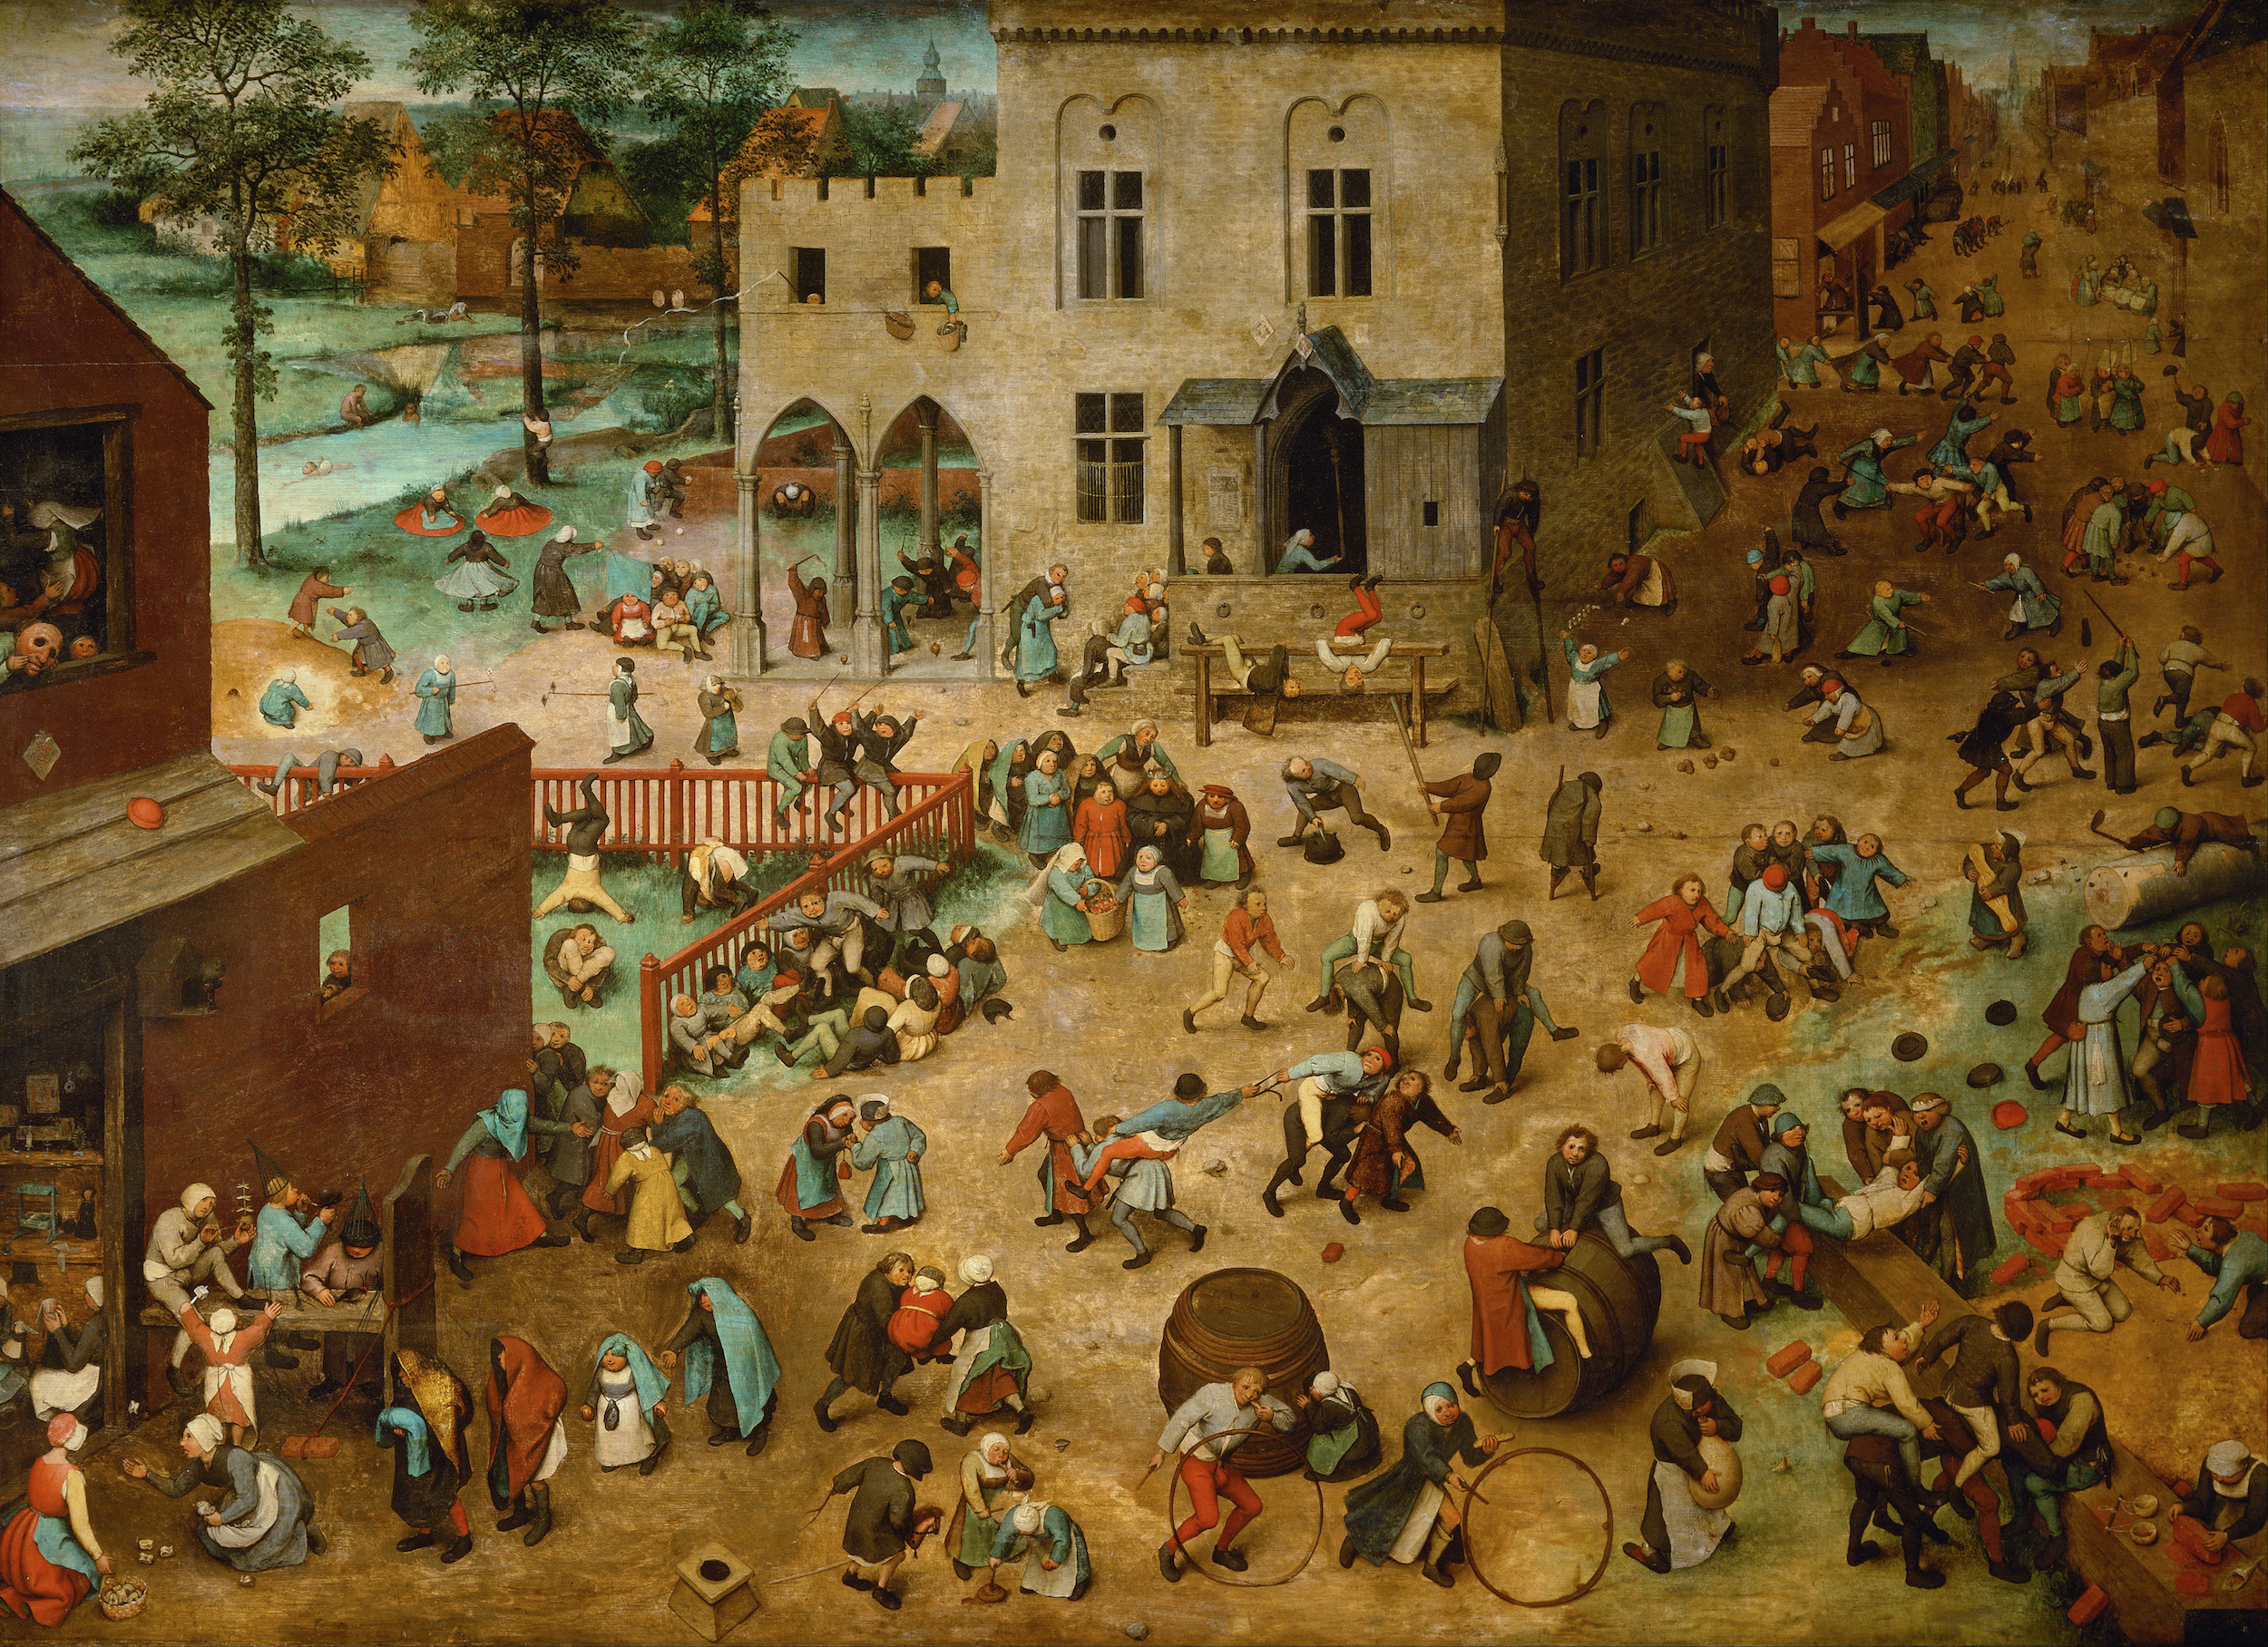 Giochi di bambini by Pieter Bruegel il Vecchio - 1560 - 118 x 161 cm Kunsthistorisches Museum